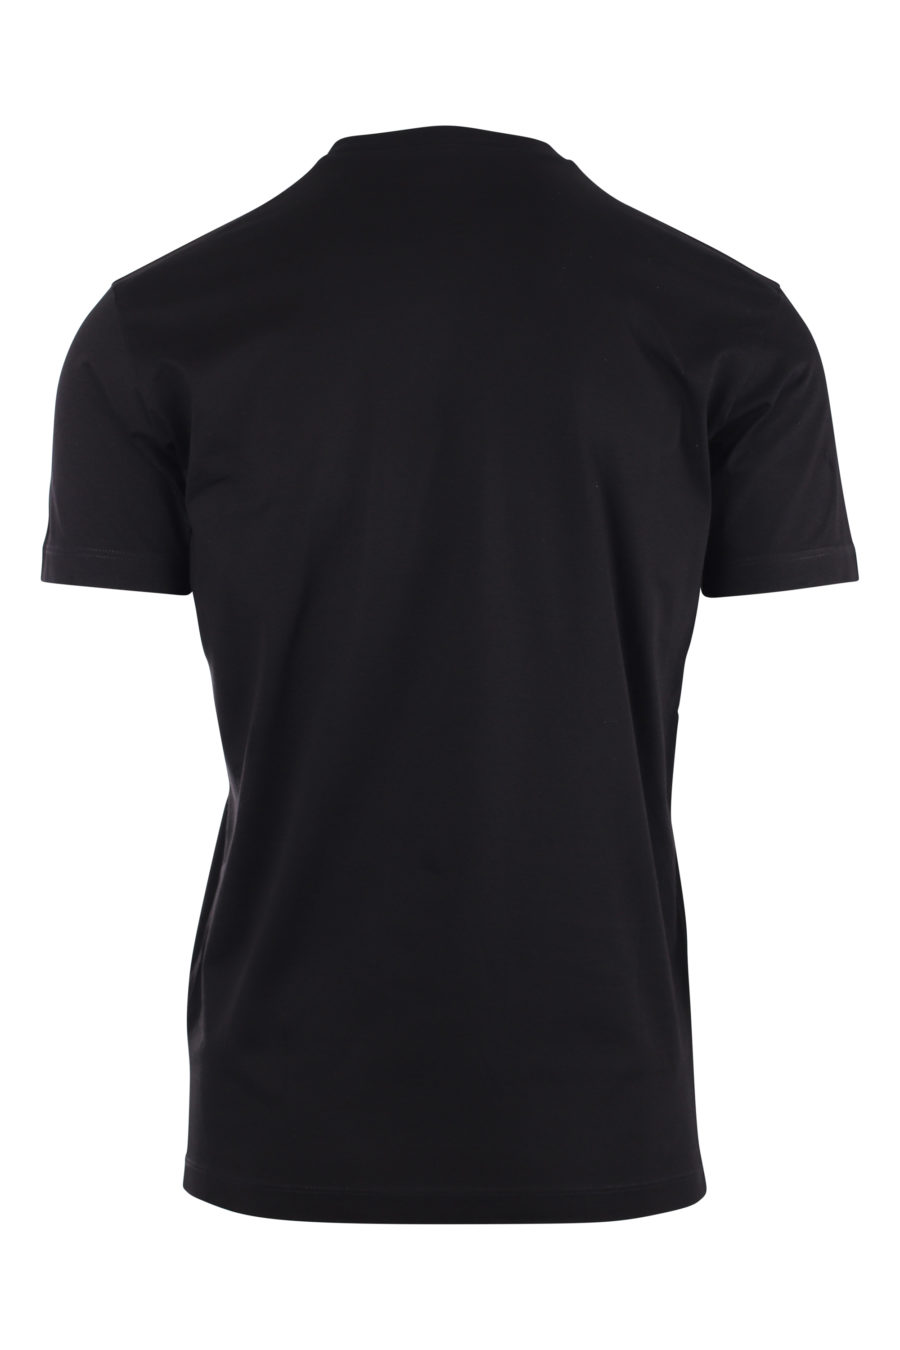 T-shirt schwarz mit kleinem Logo ceresio 9 - IMG 9730